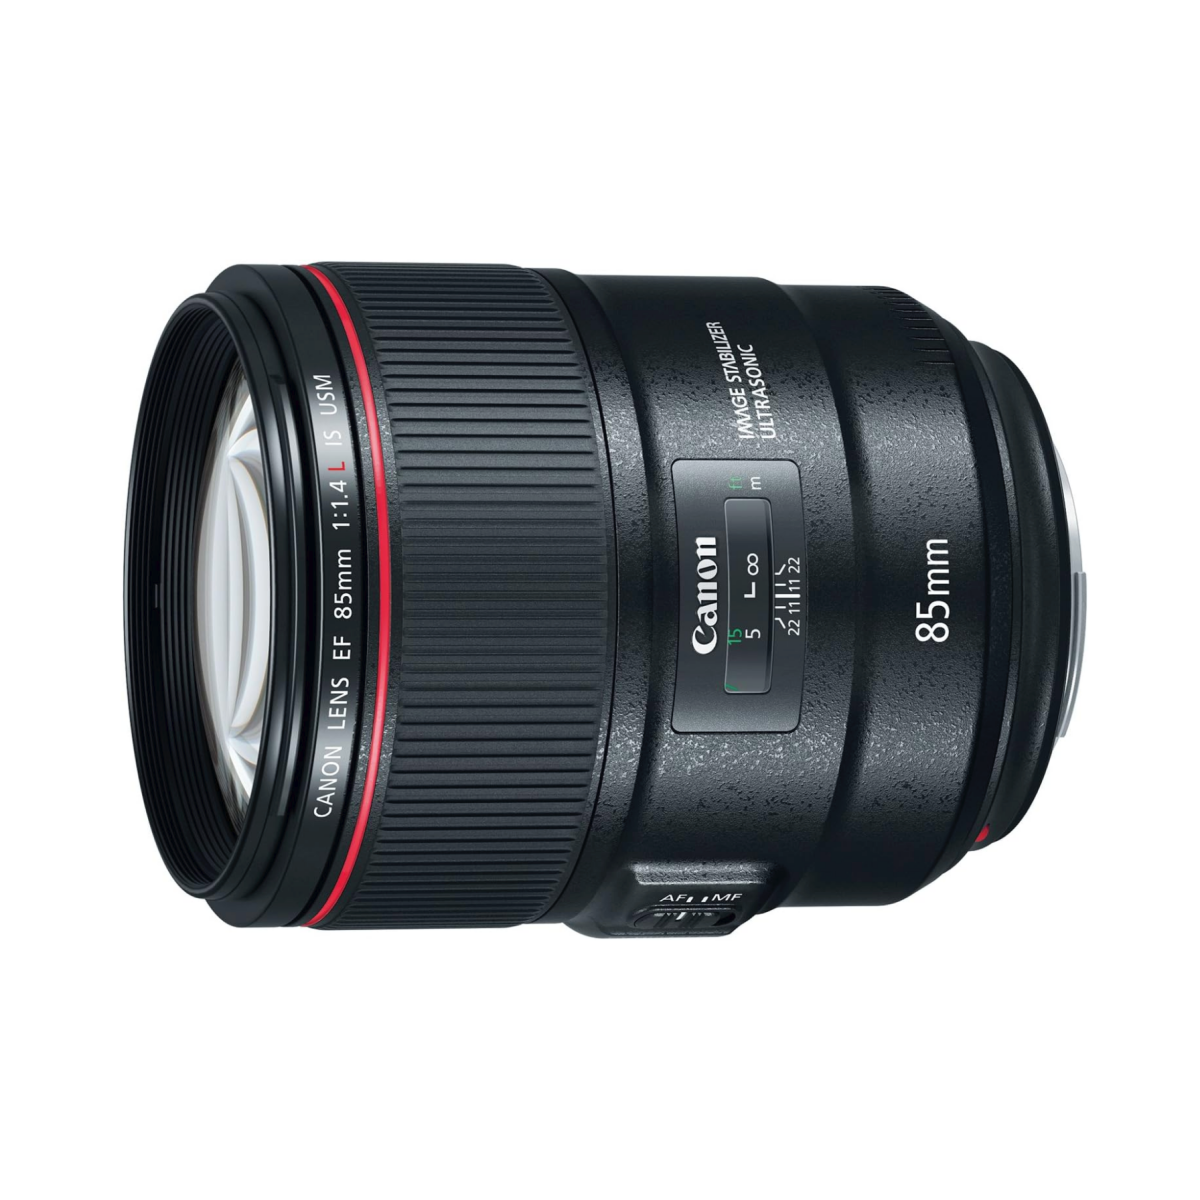 A Canon EF 85mm F1.4L IS USM lens for DSLR cameras